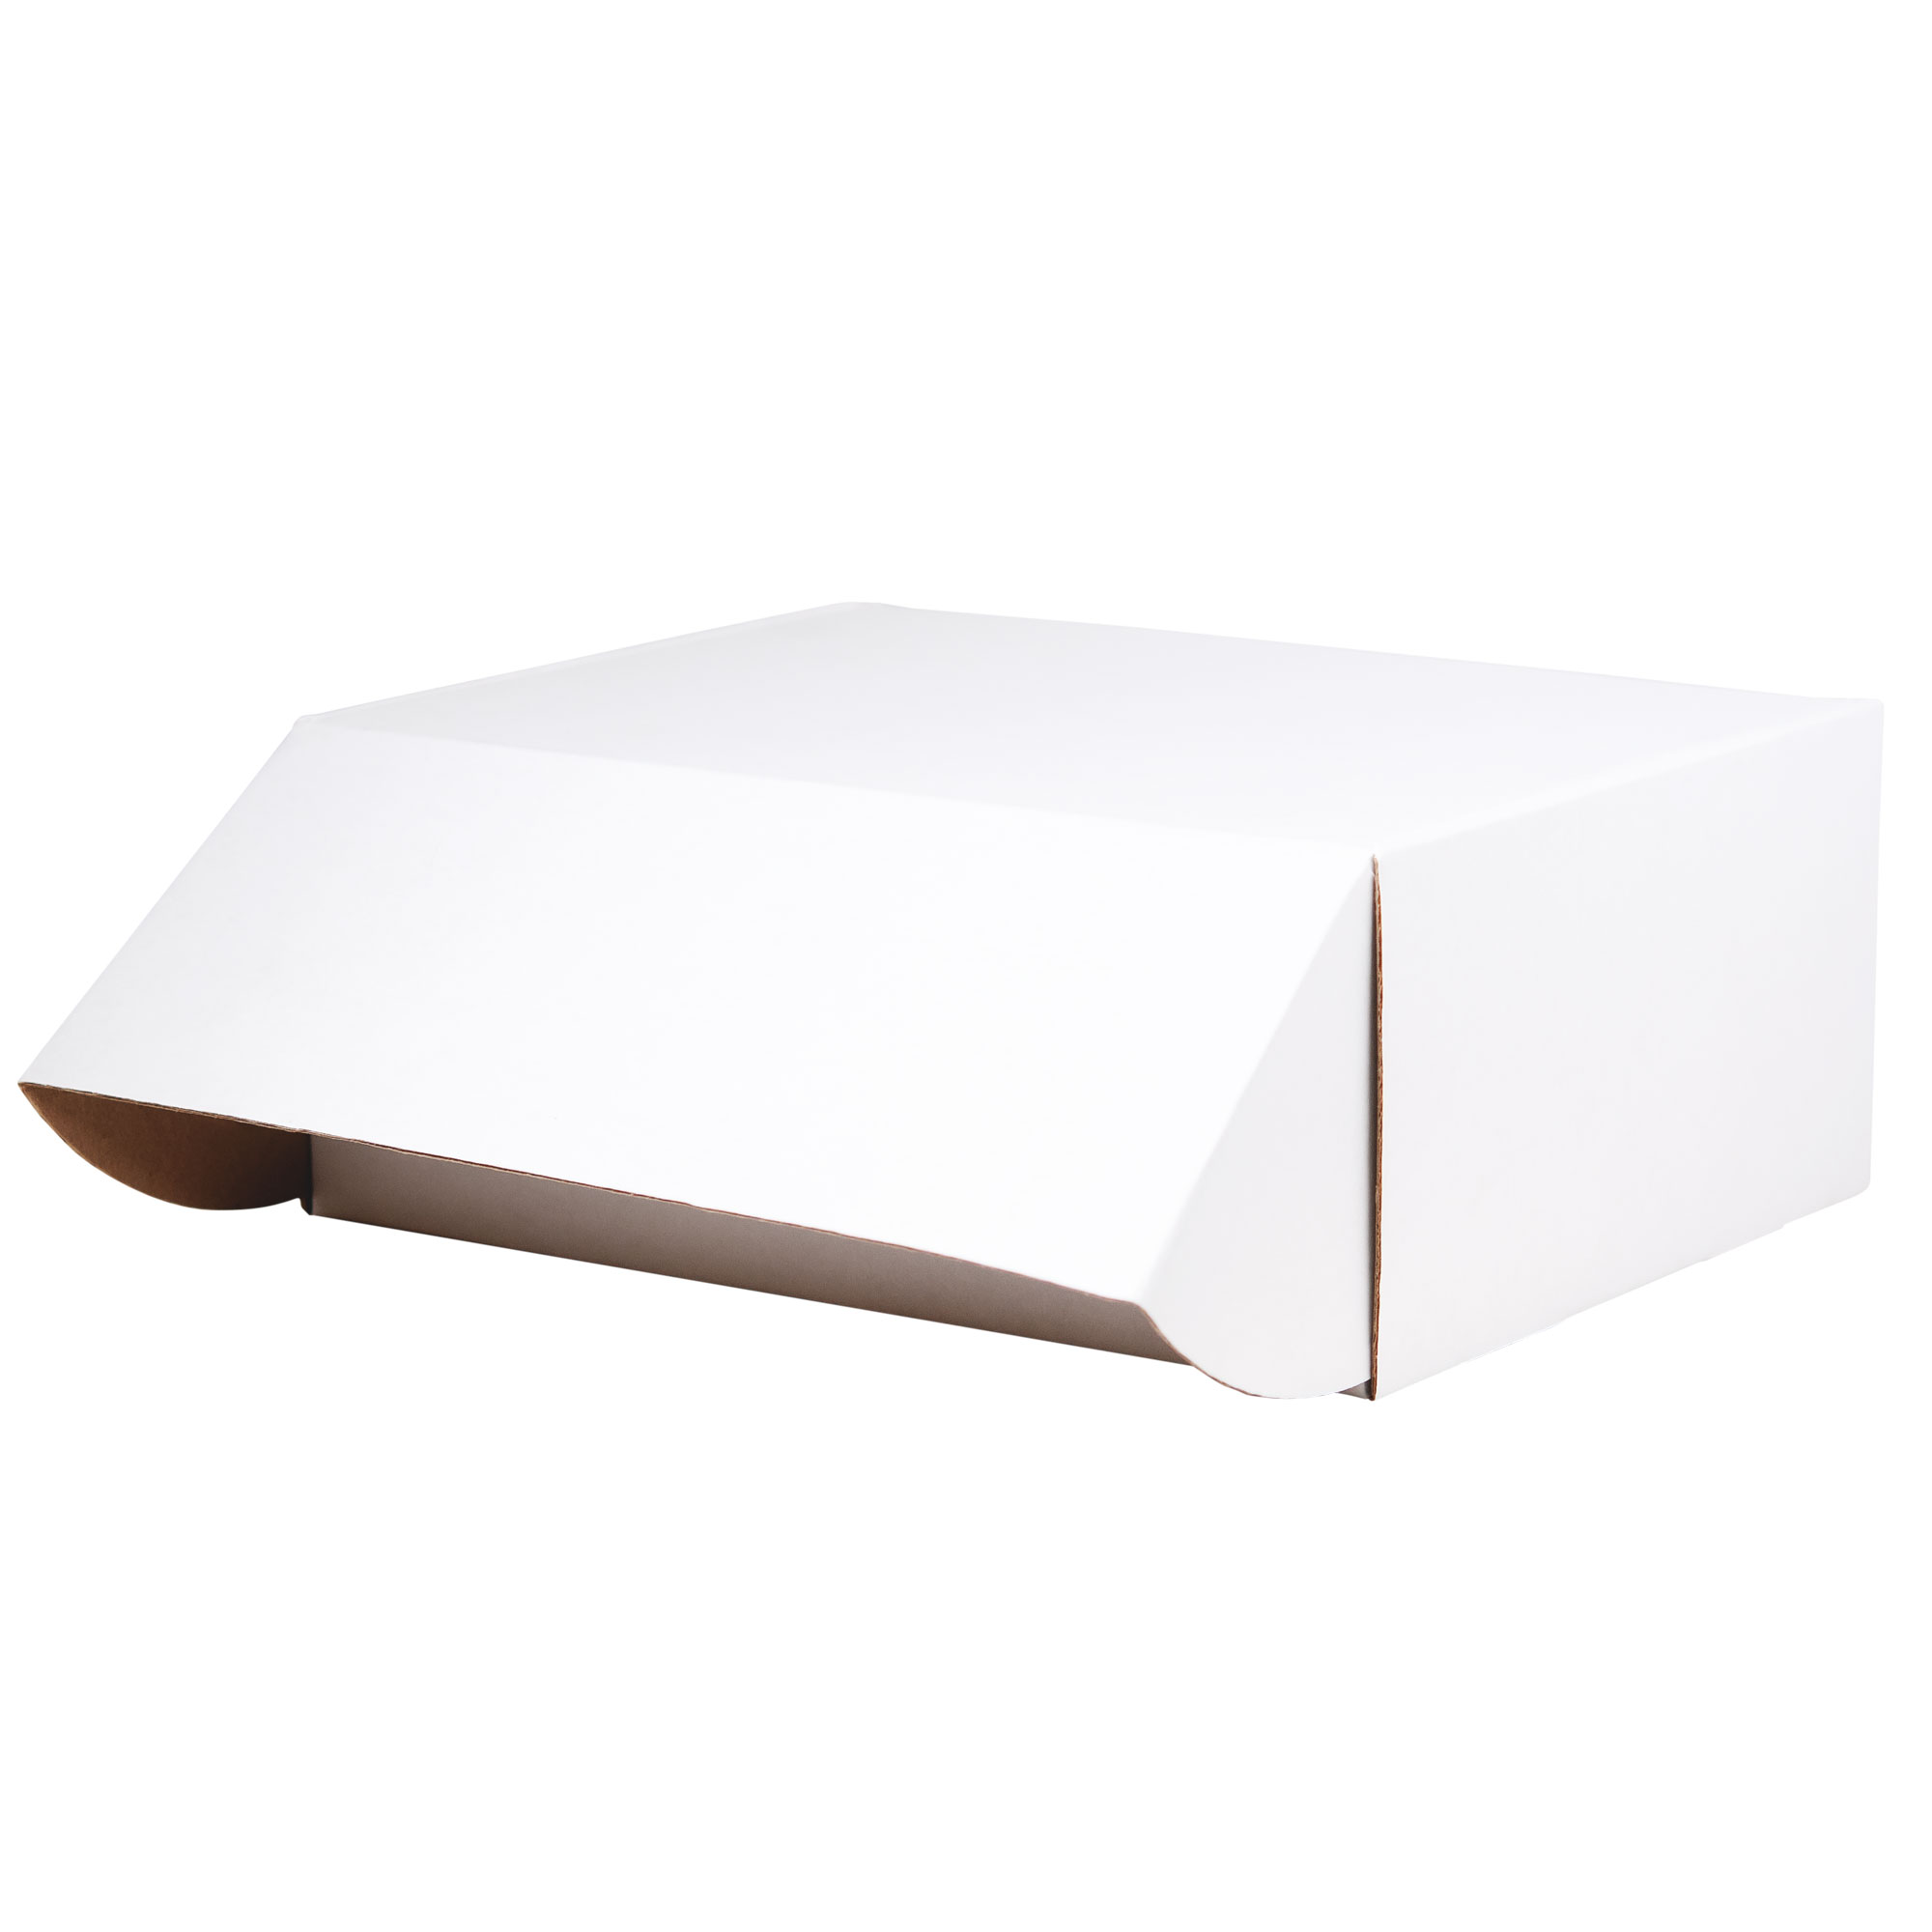 Подарочная коробка универсальная малая, белая, 280 х 215 х 113мм